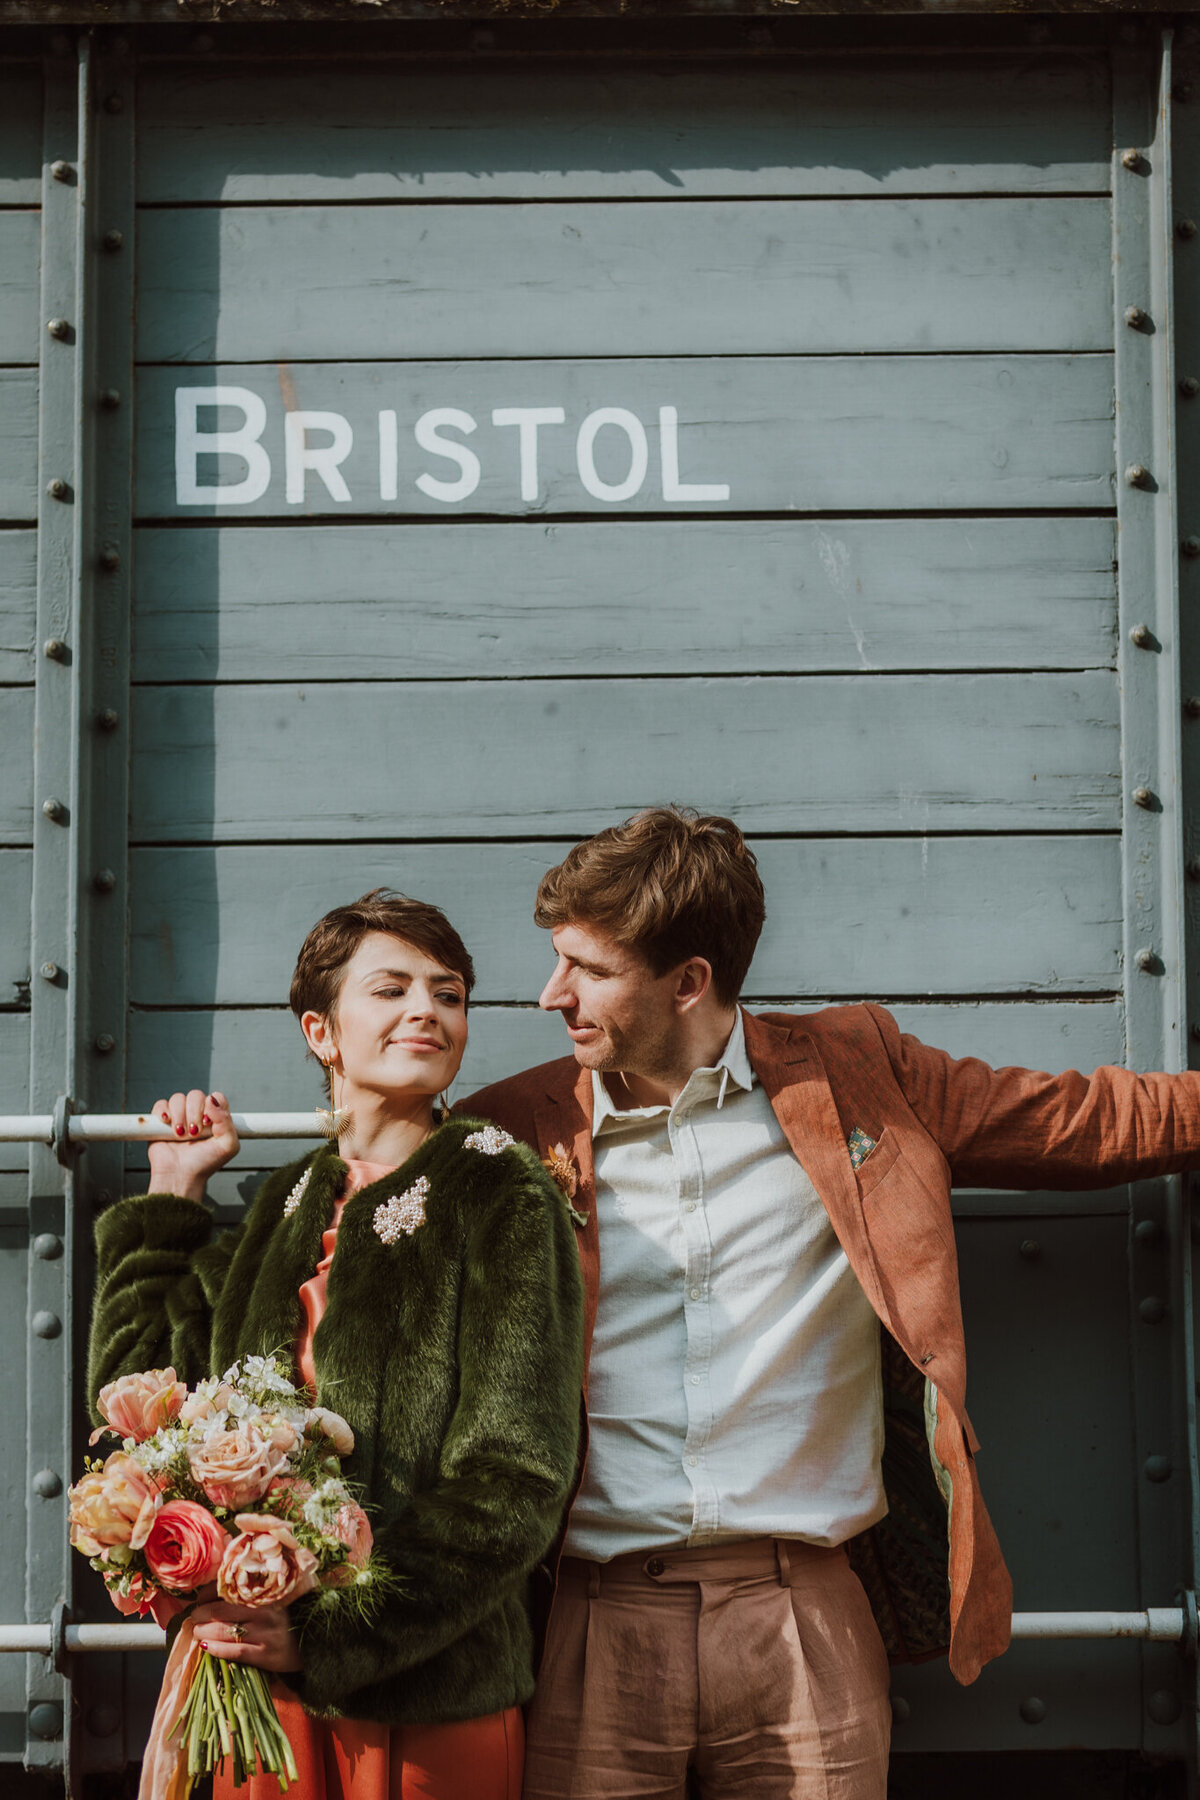 A Bristol wedding